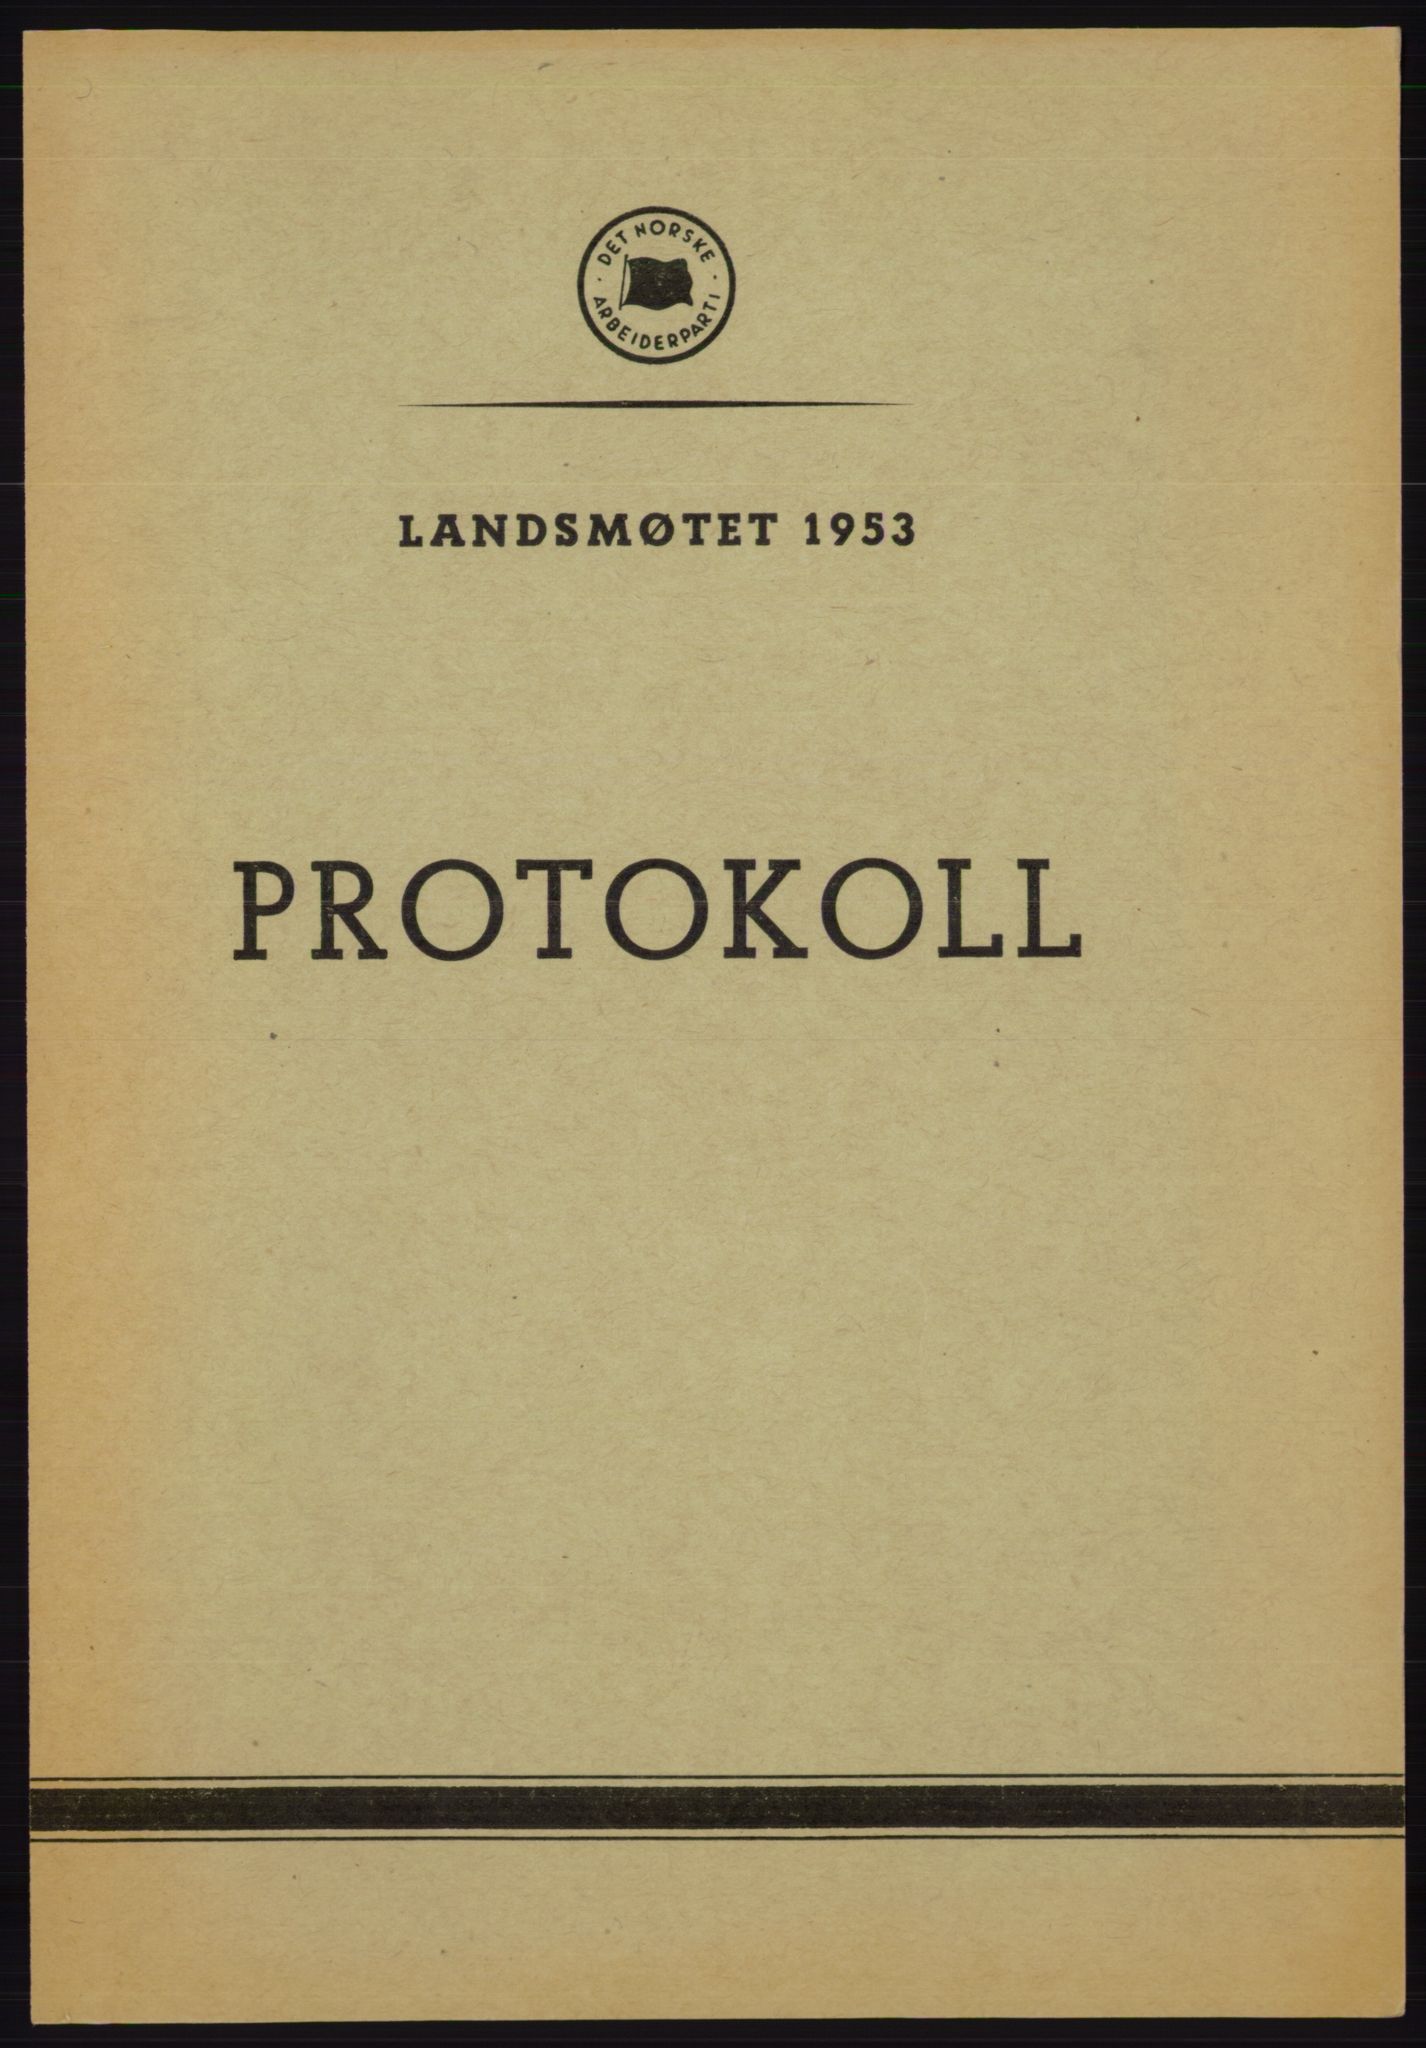 Det norske Arbeiderparti - publikasjoner, AAB/-/-/-: Protokoll over forhandlingene på det 34. ordinære landsmøte 22.-25. mars 1953 i Oslo, 1953